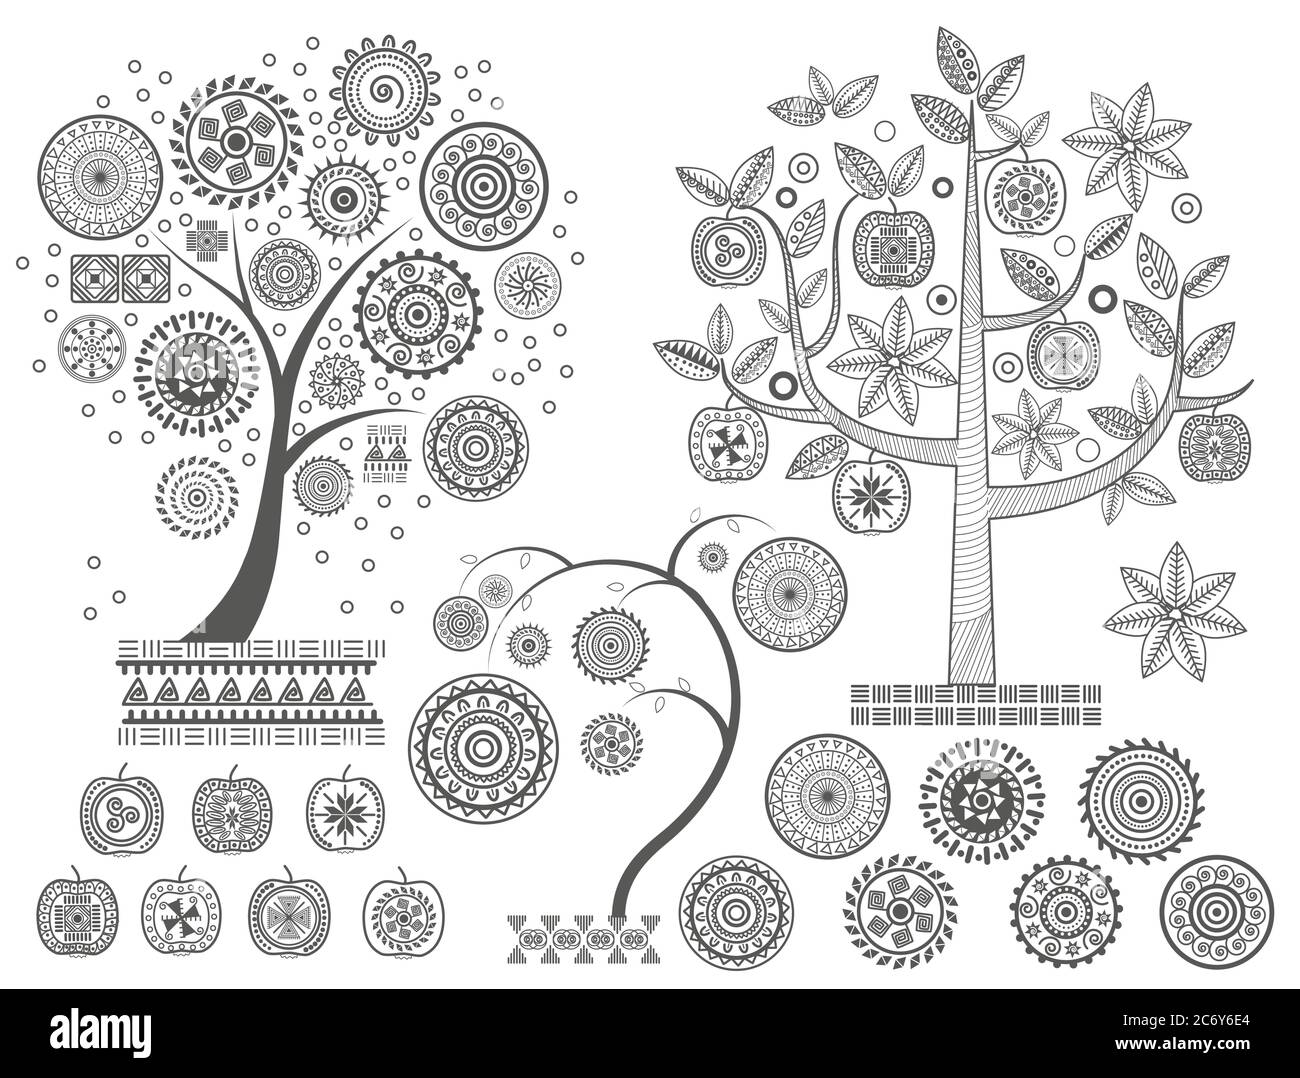 Ornament BaumeDie Blätter und Zierkreise auf der Baum-Vektor-Illustration. Azteken Maya alten Zivilisationen Ornamente Stock Vektor